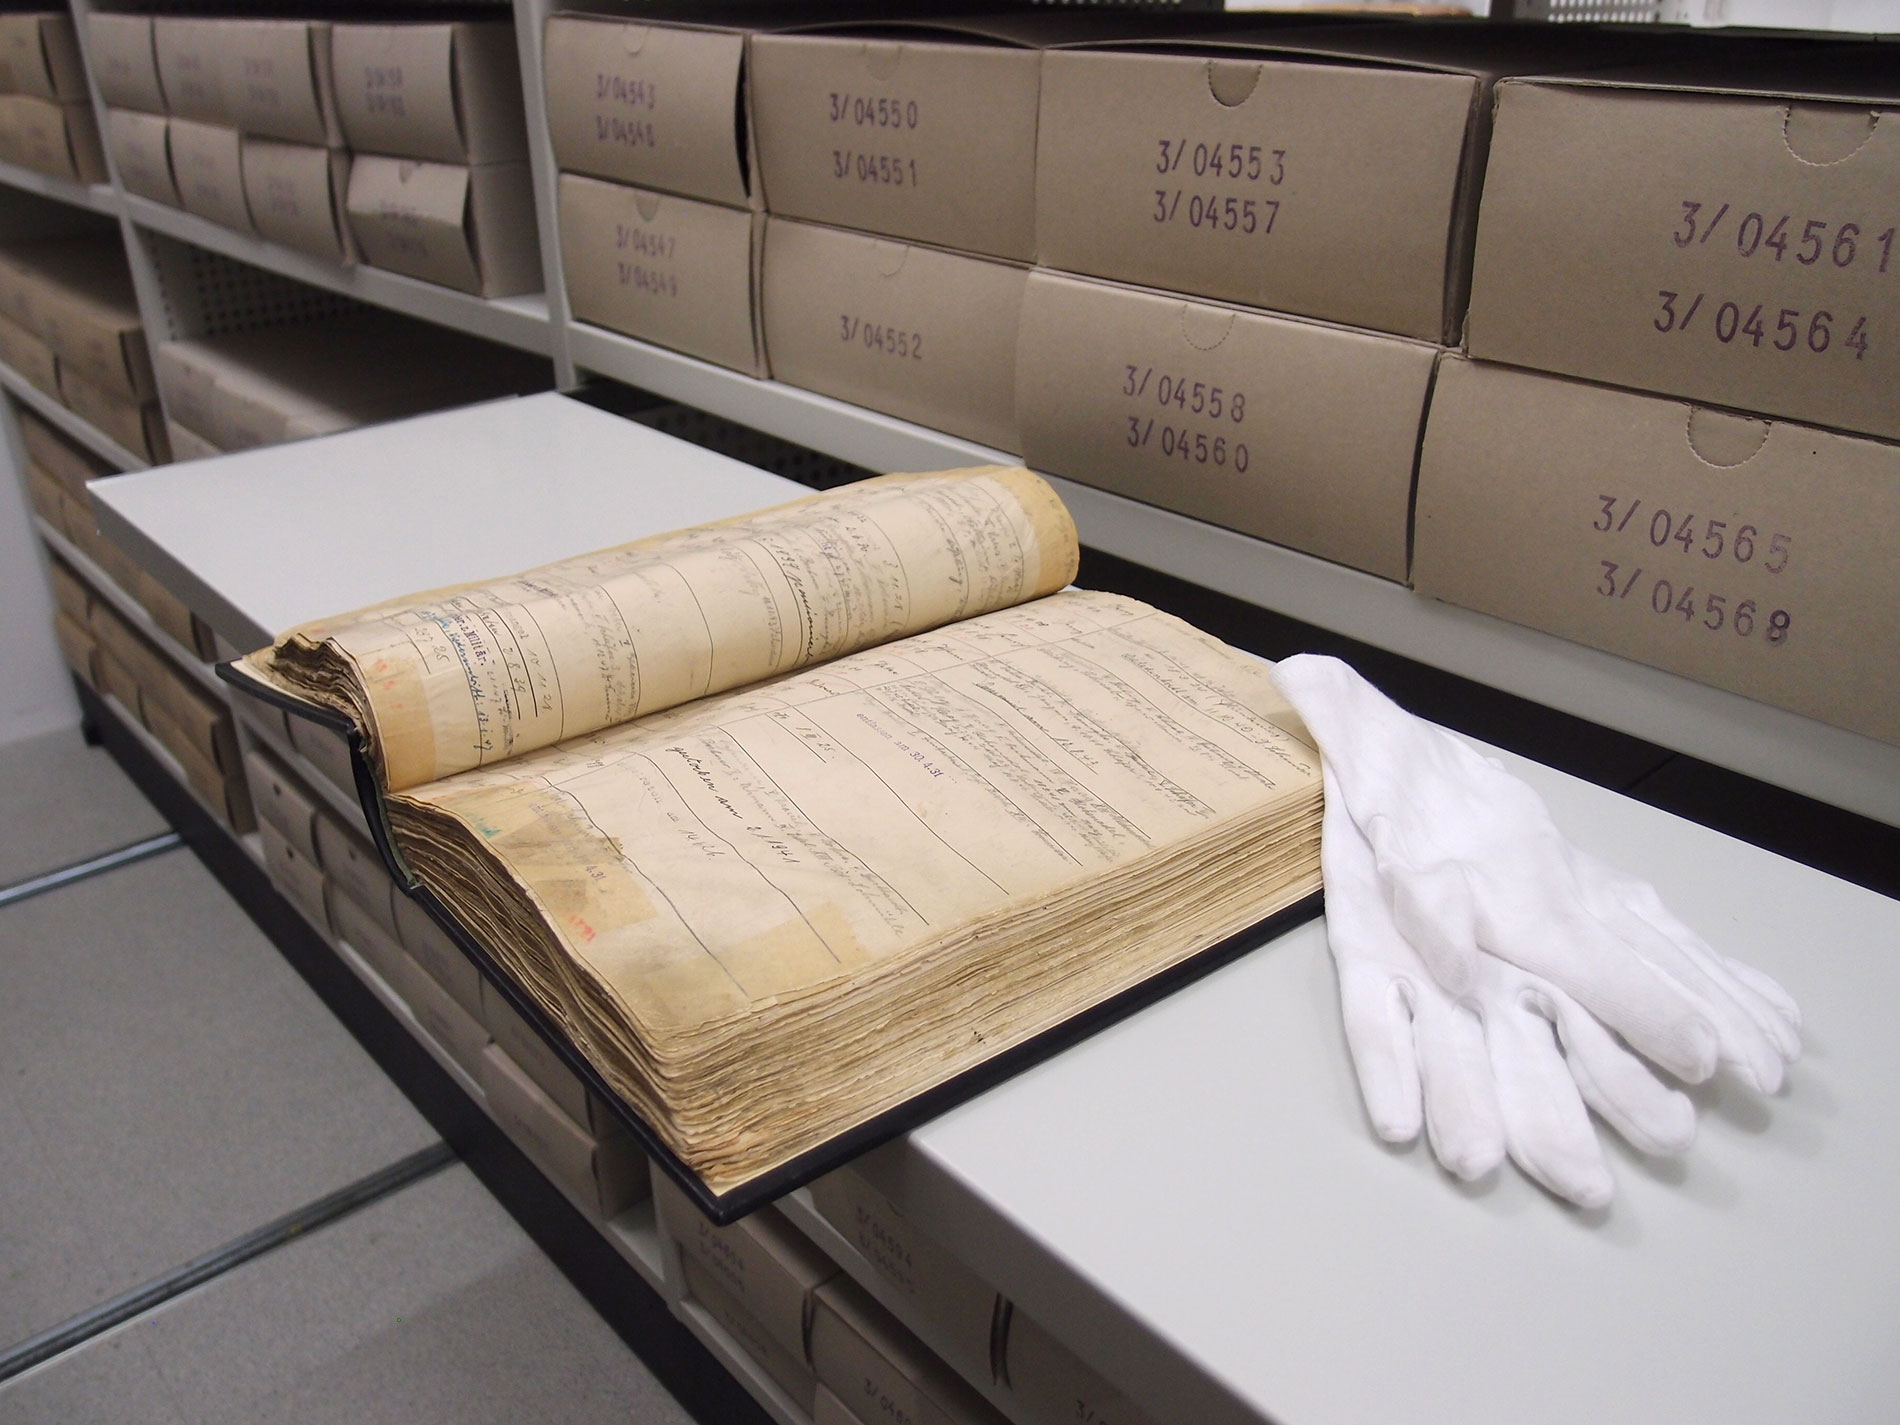 Mitarbeitendenverzeichnis aus dem 19. Jahrhundert. Weiße Handschuhe liegen rechts daneben.